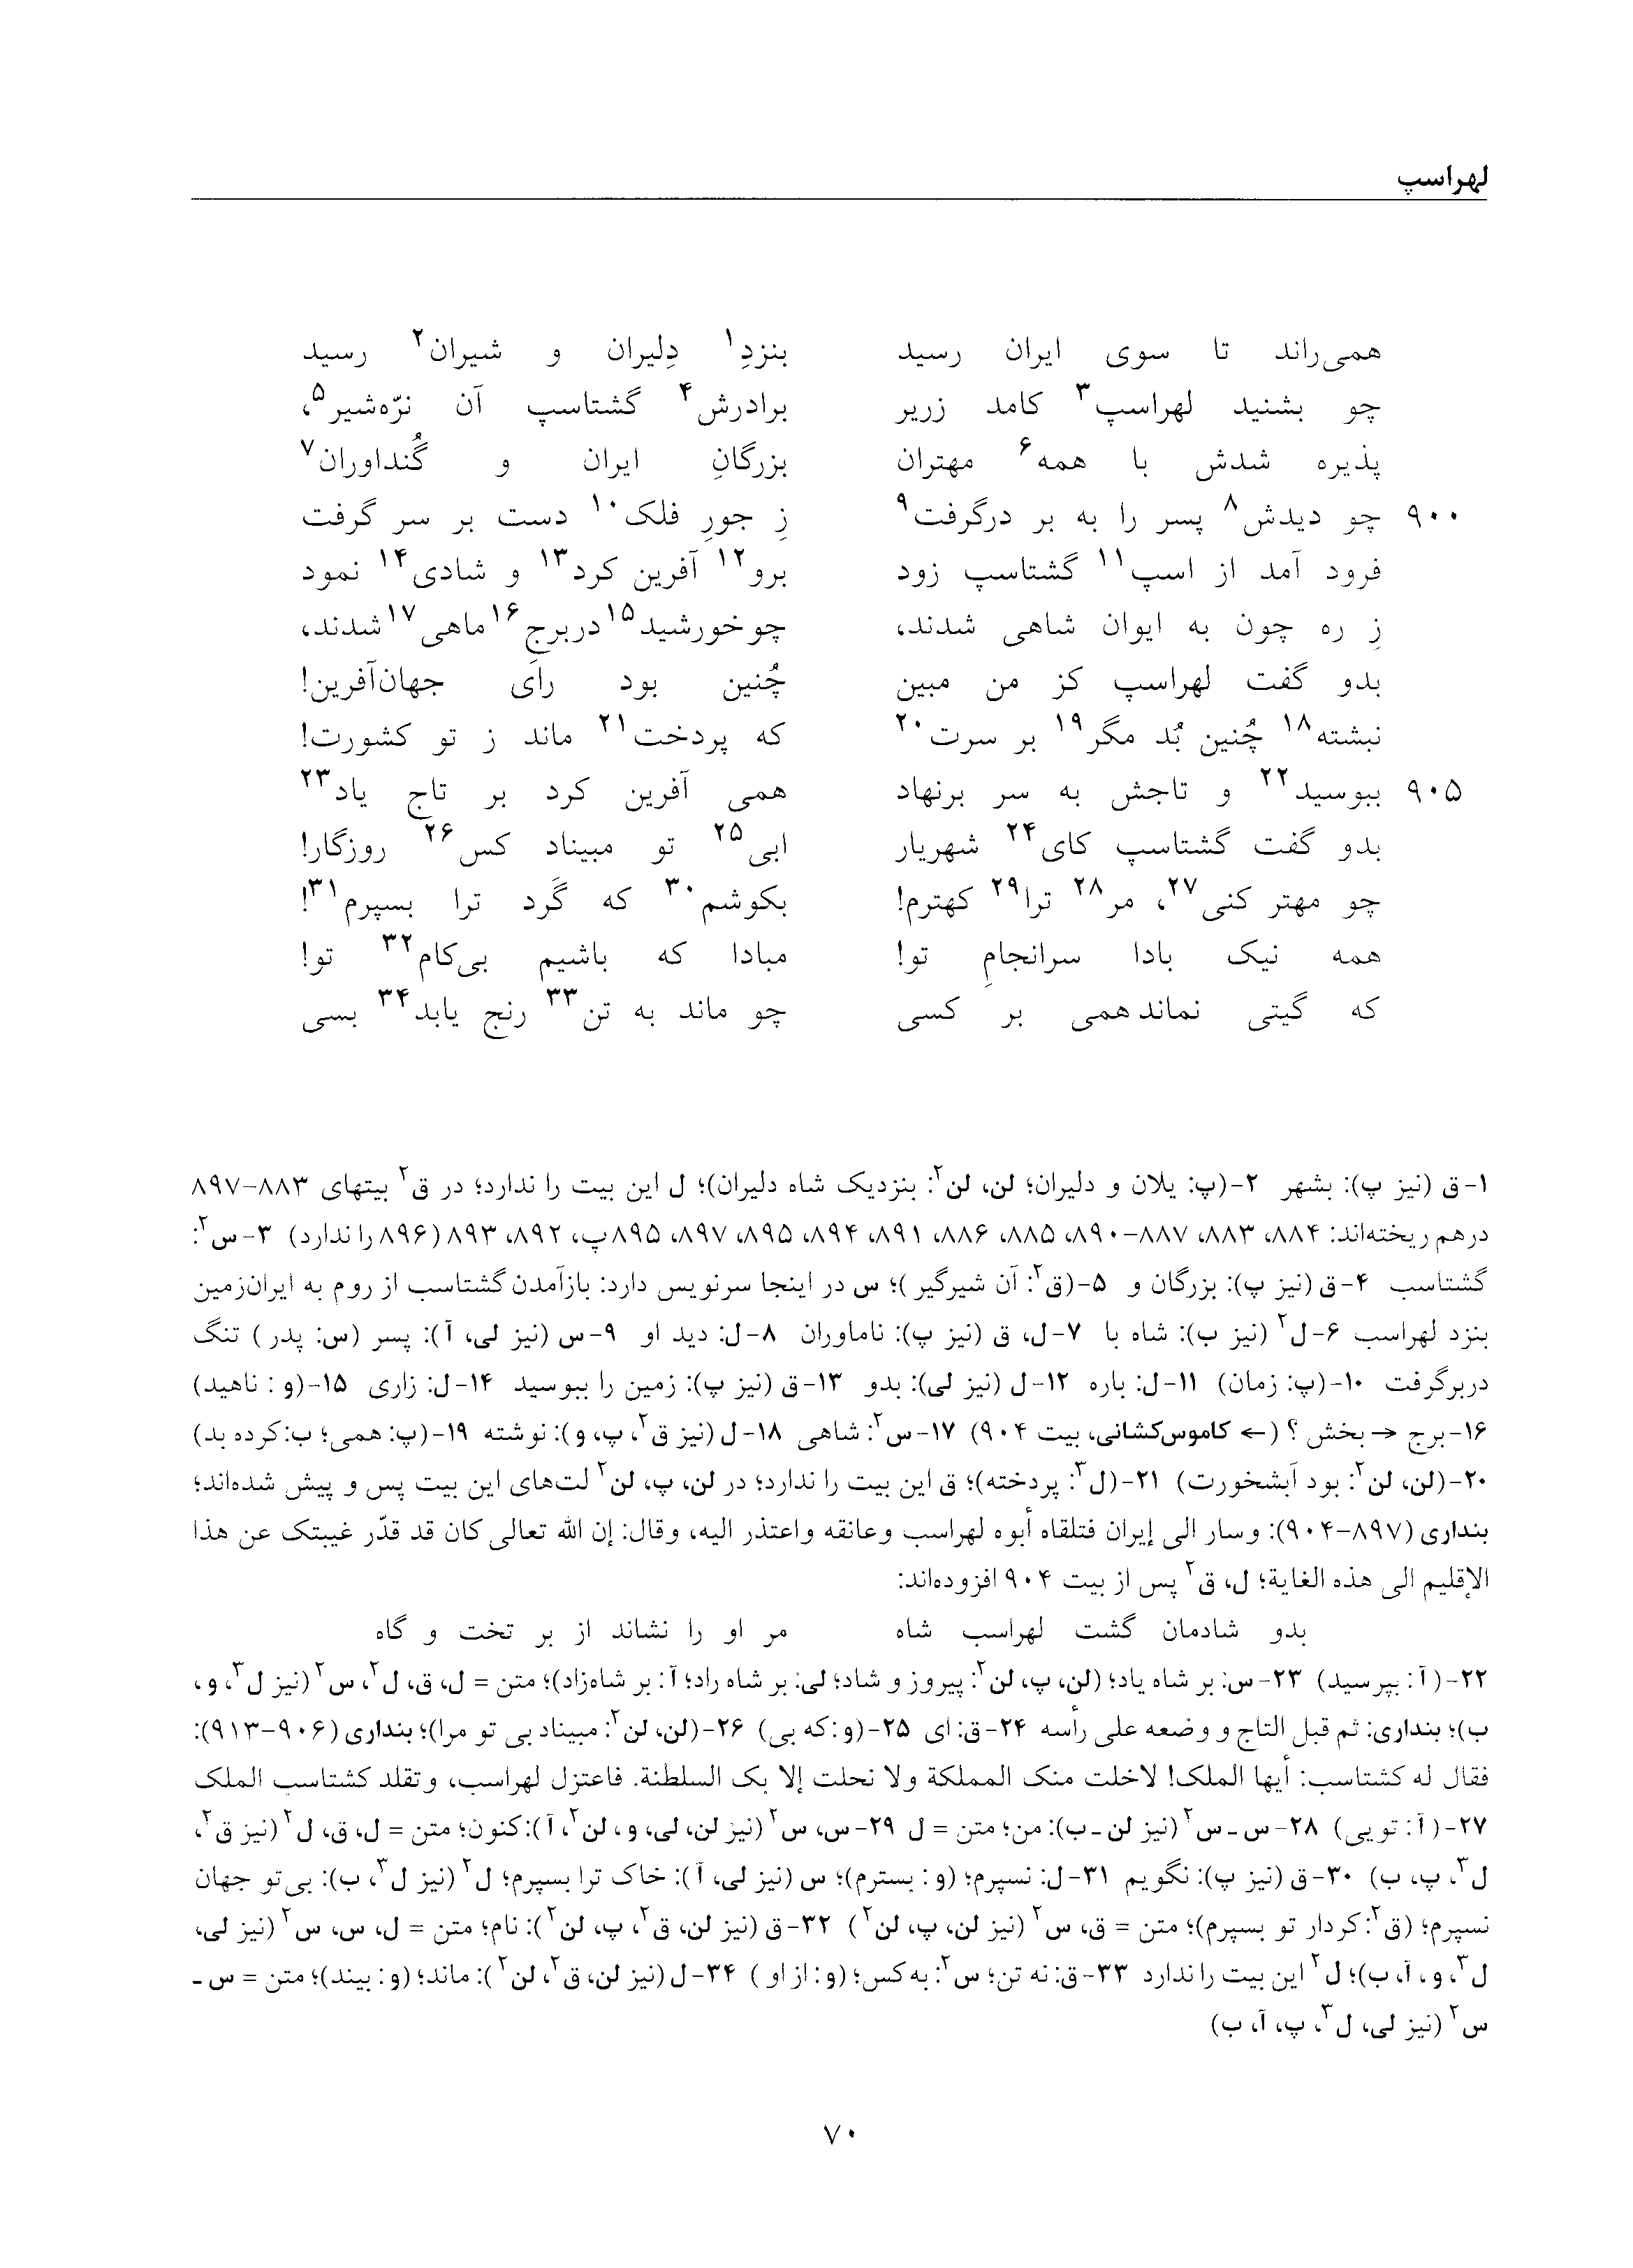 vol. 5, p. 70